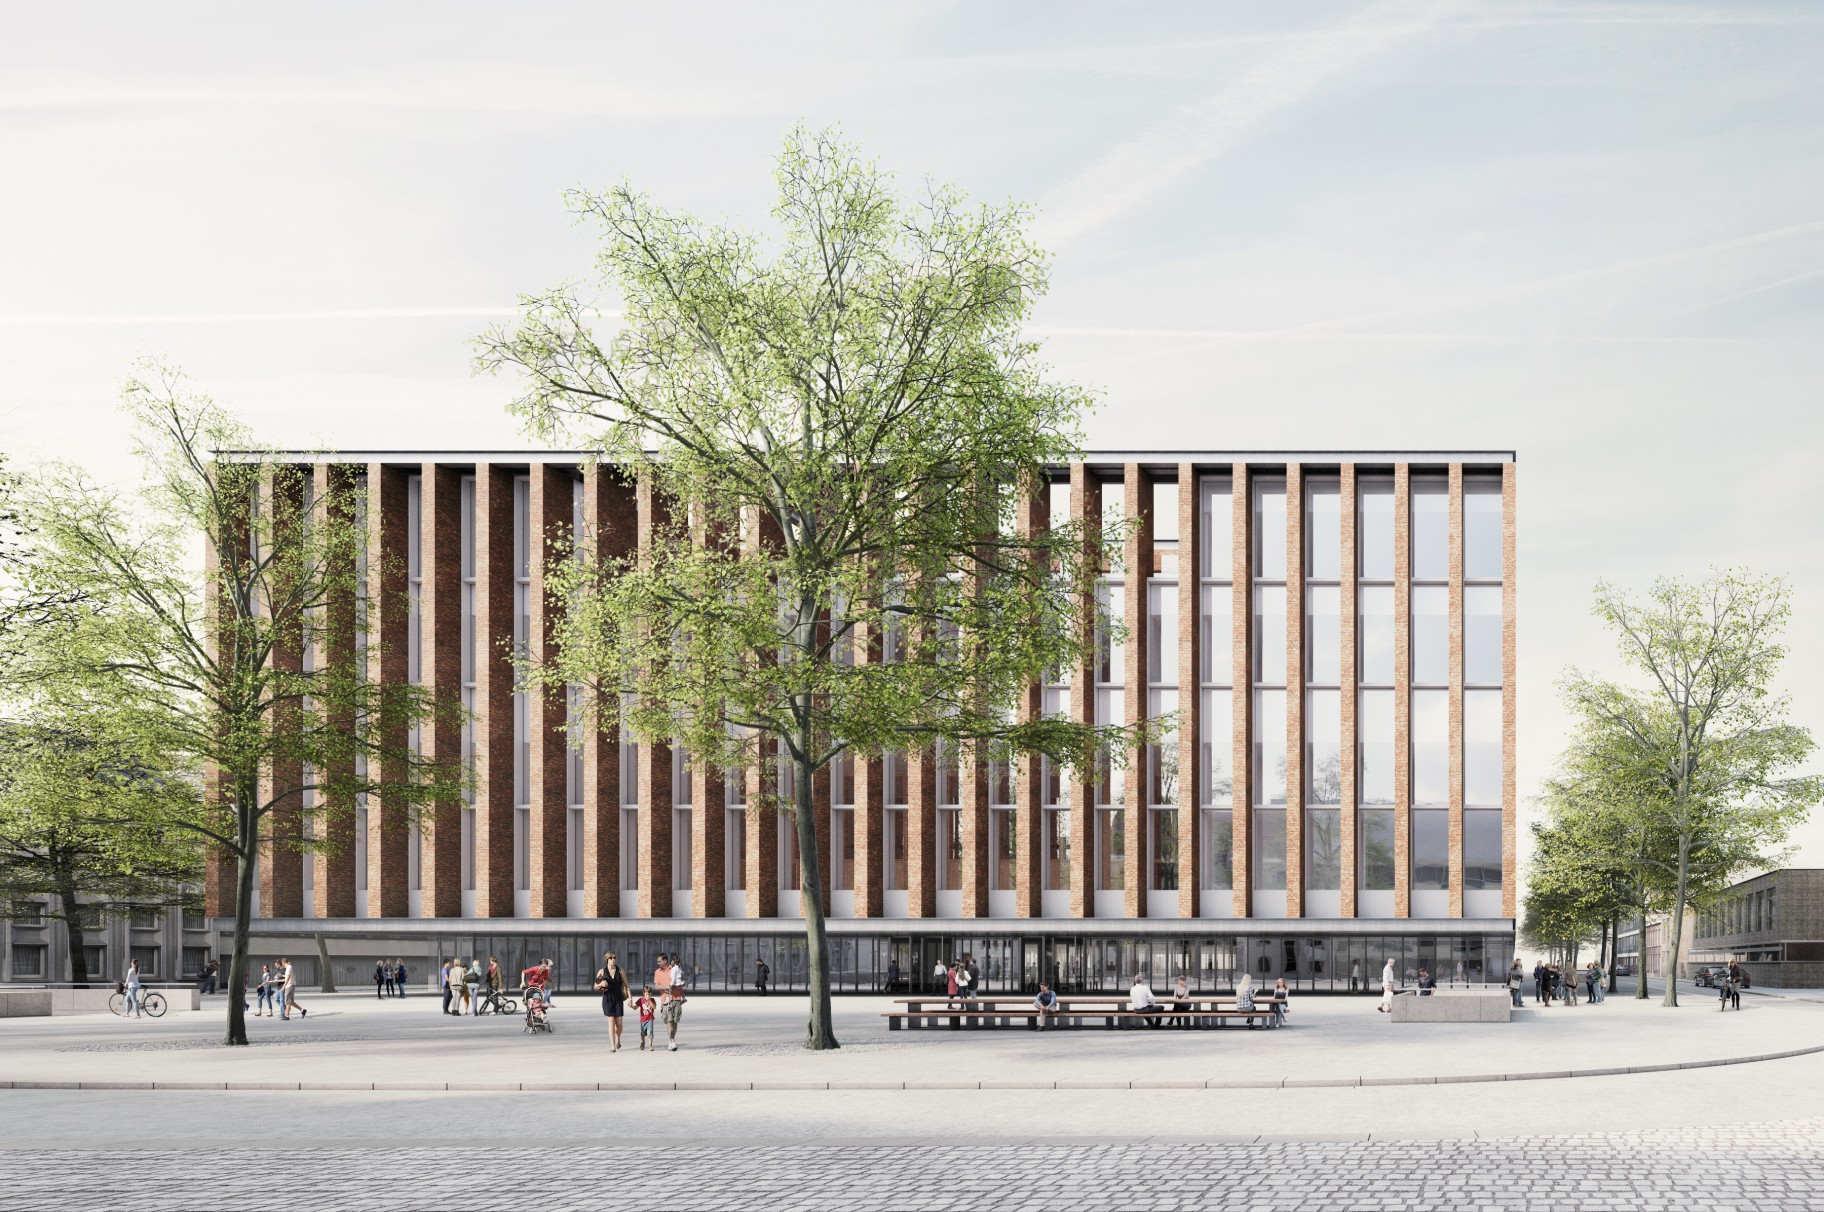 META and Eduardo Souto de Moura design the Beursplein & Congresgebouw urban renewal project in Bruges